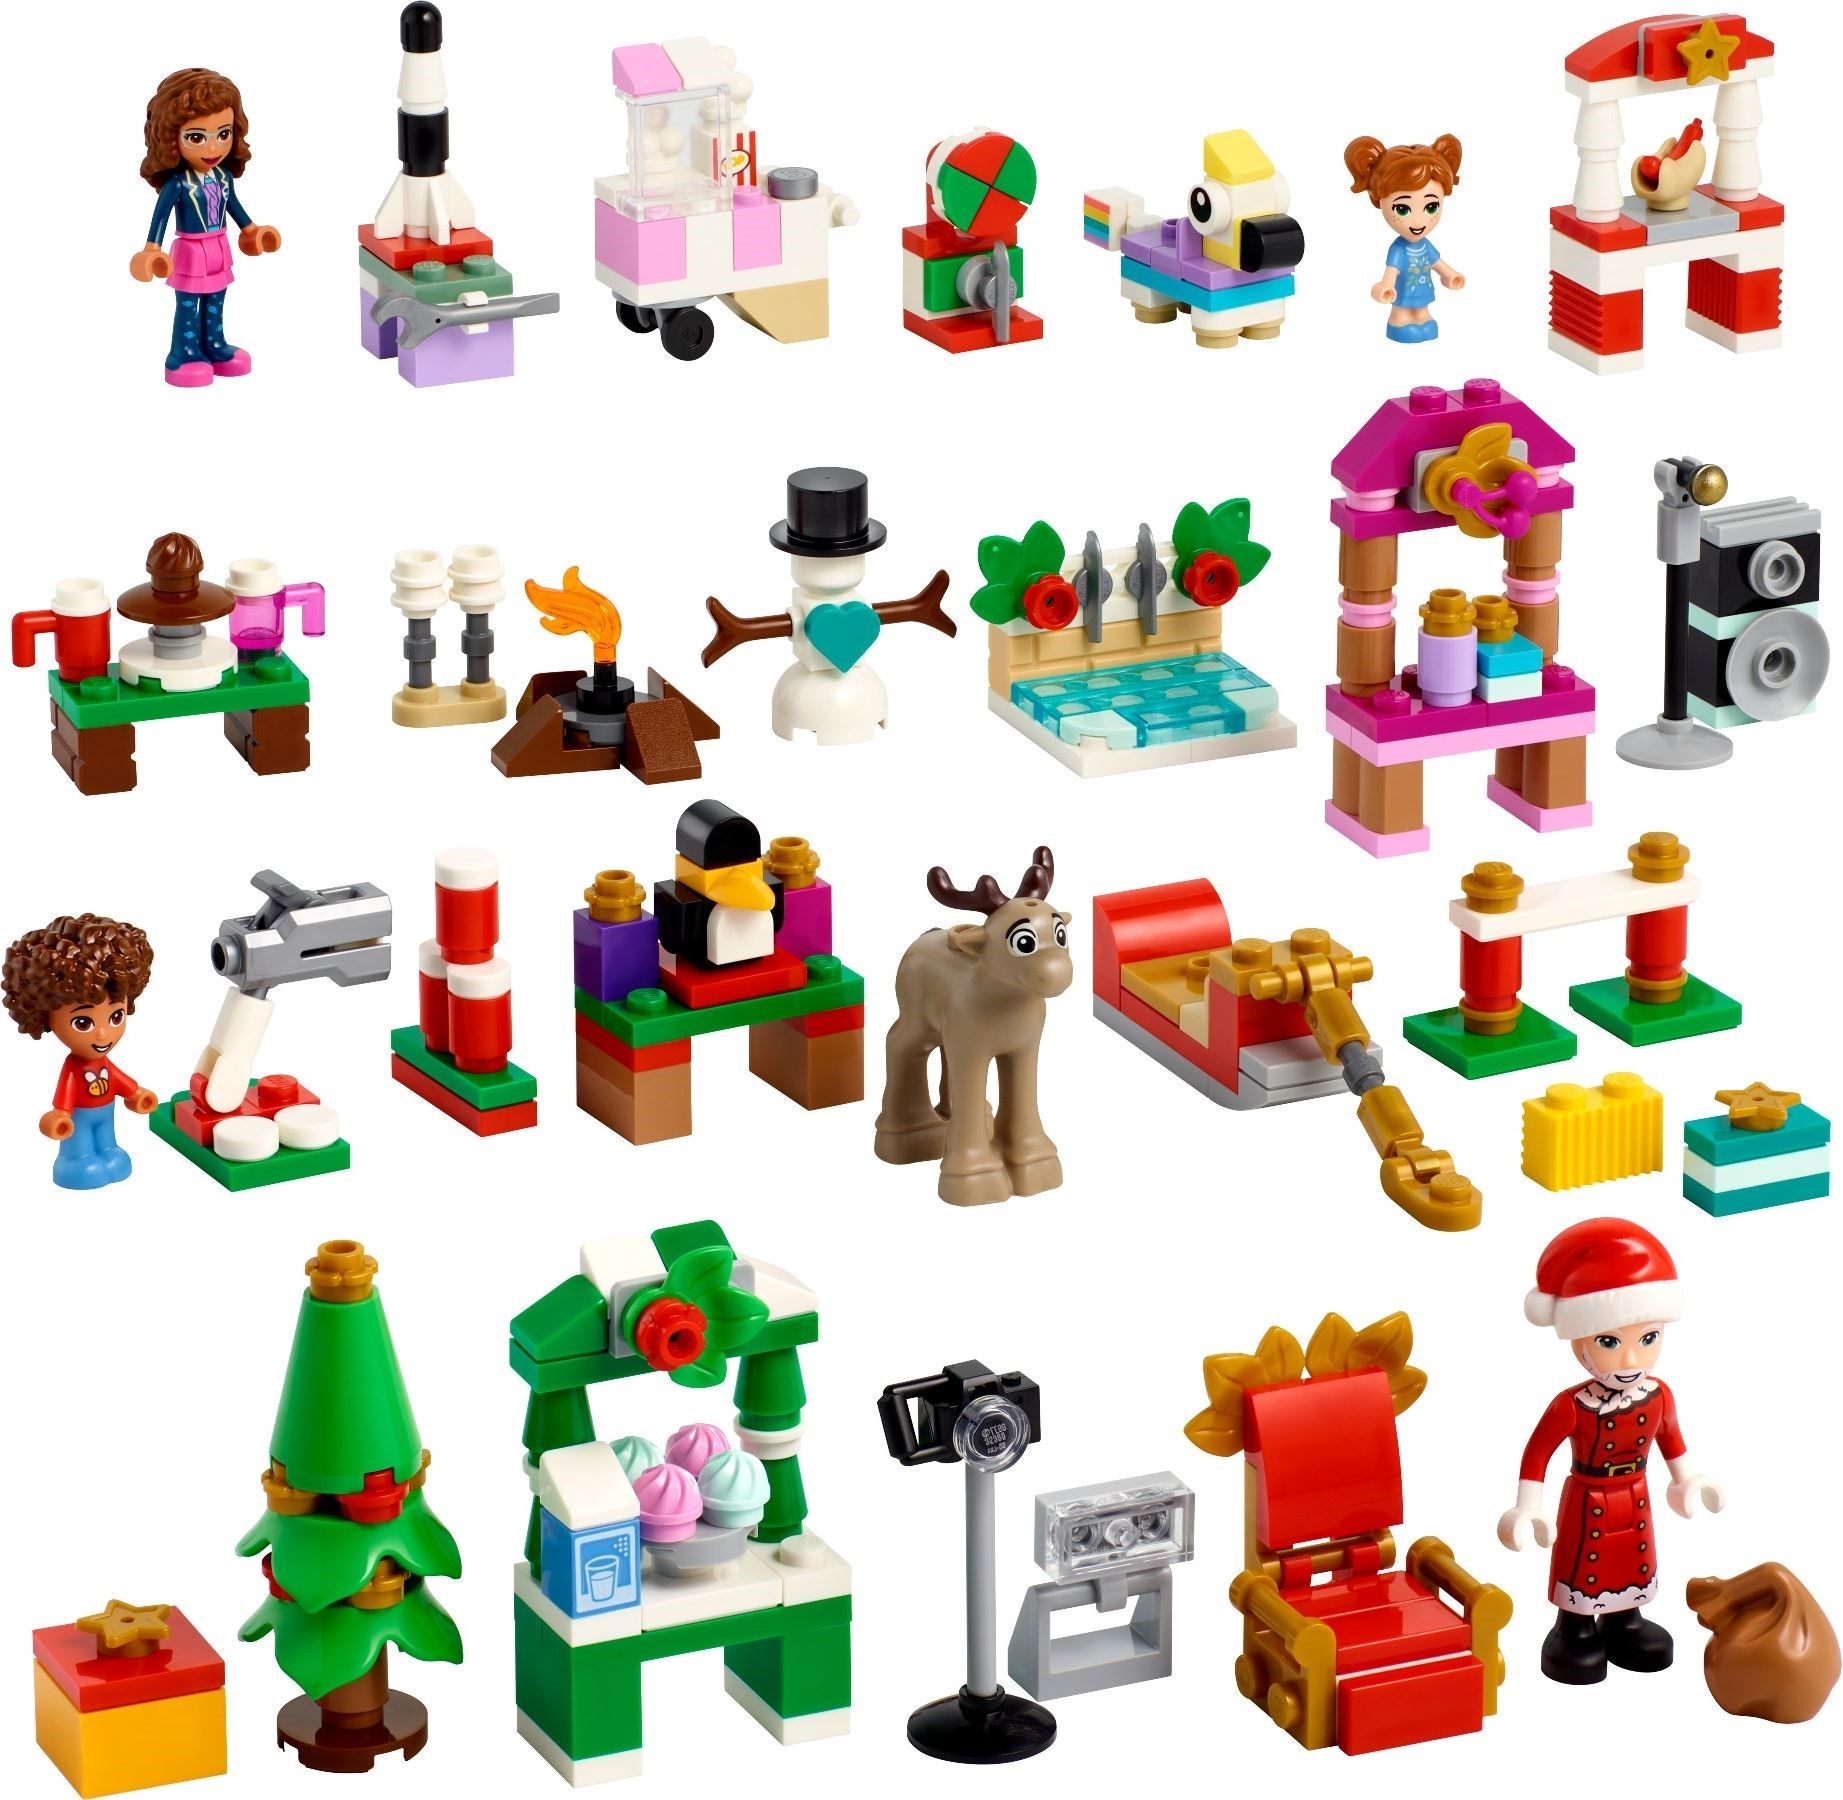 41706 Lego® Friends Advent Calendar Adventskalender 2022 Klickbricks